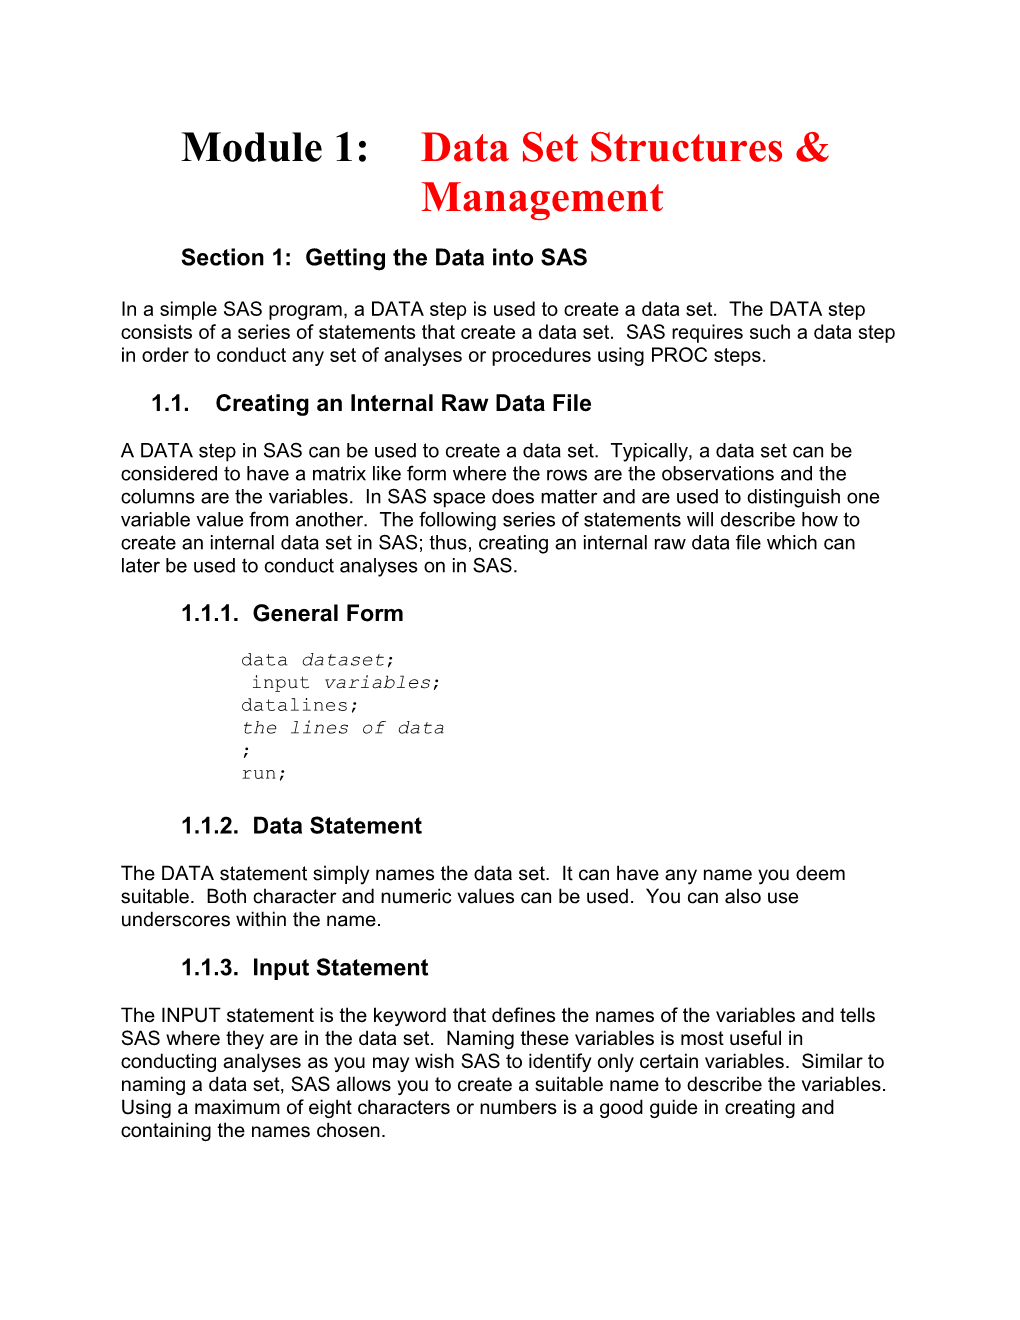 Module 1: Data Set Structures & Management